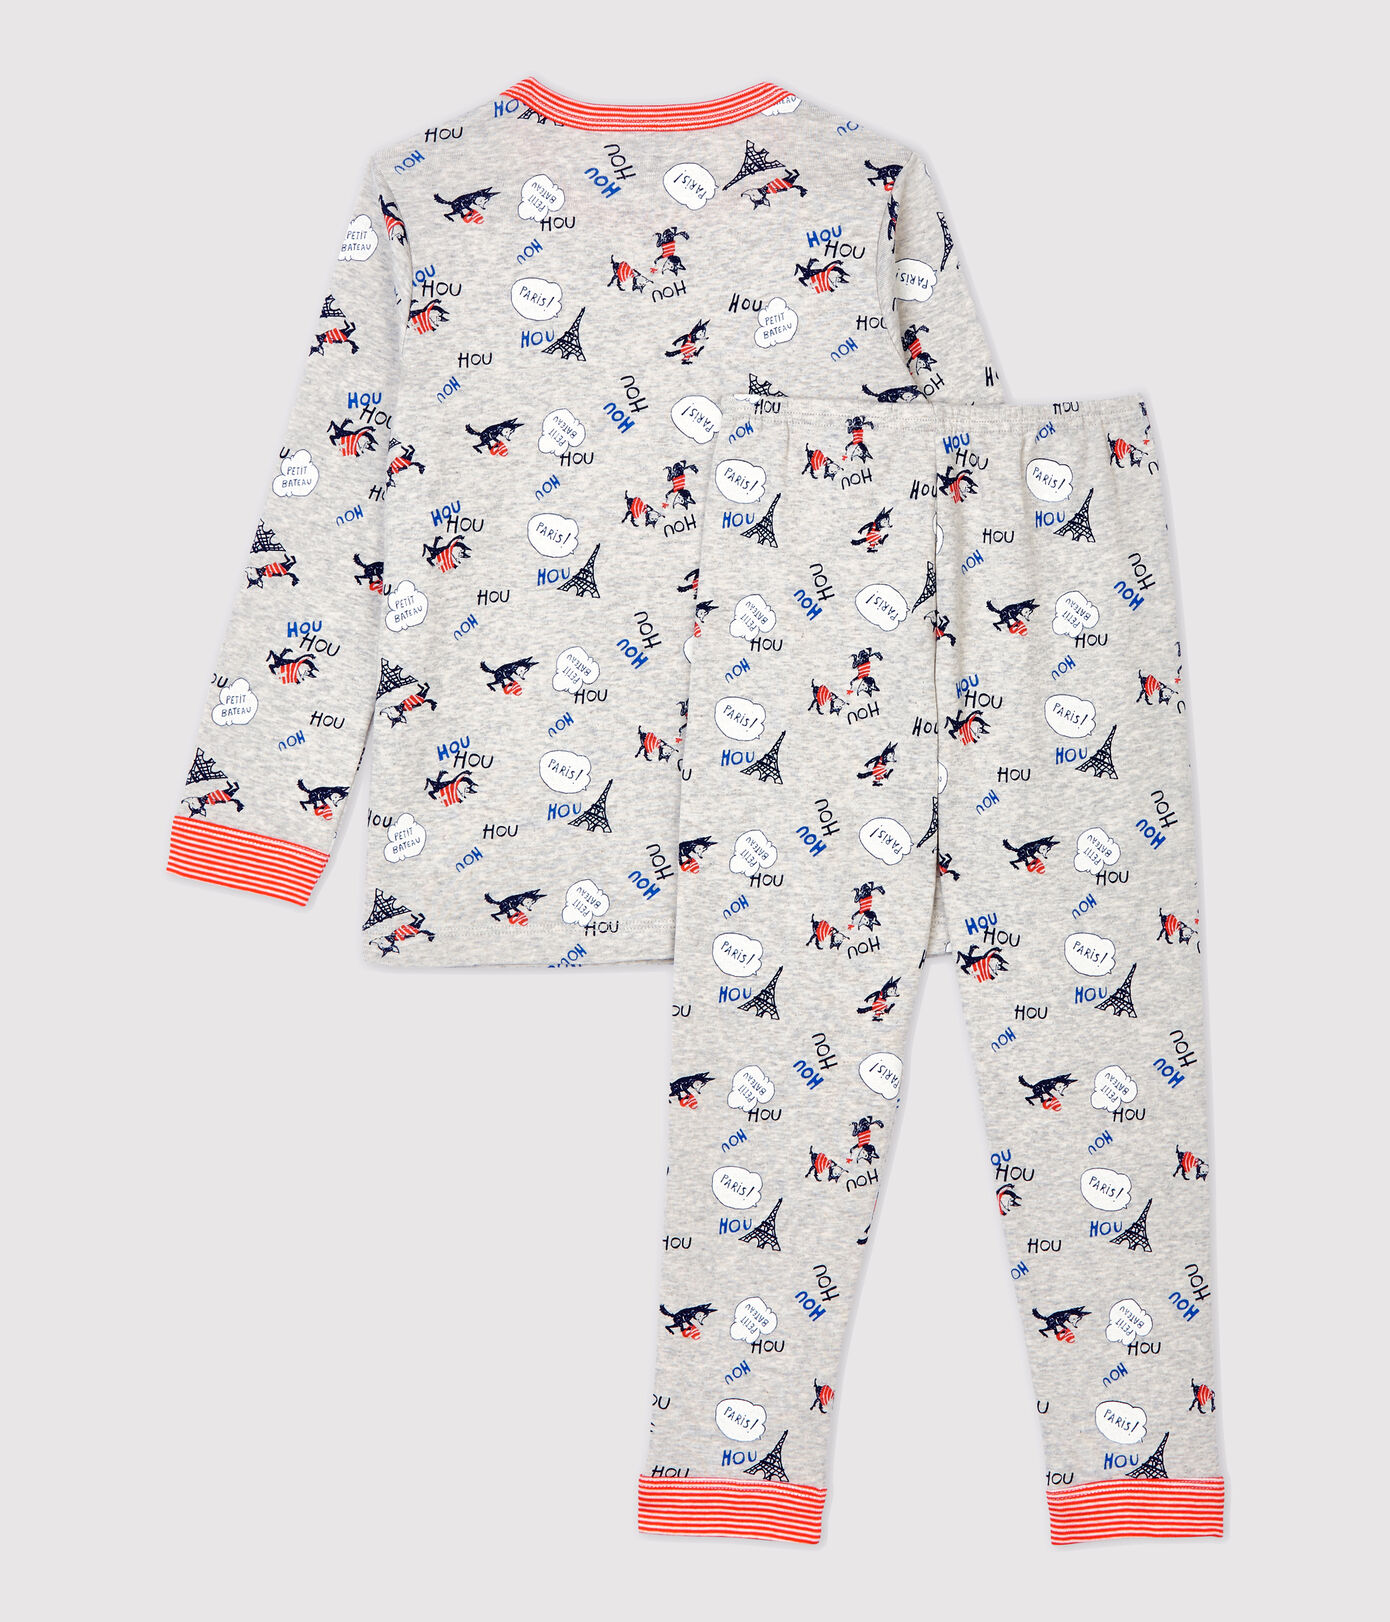 Pijamas 100% algodón orgánico niño